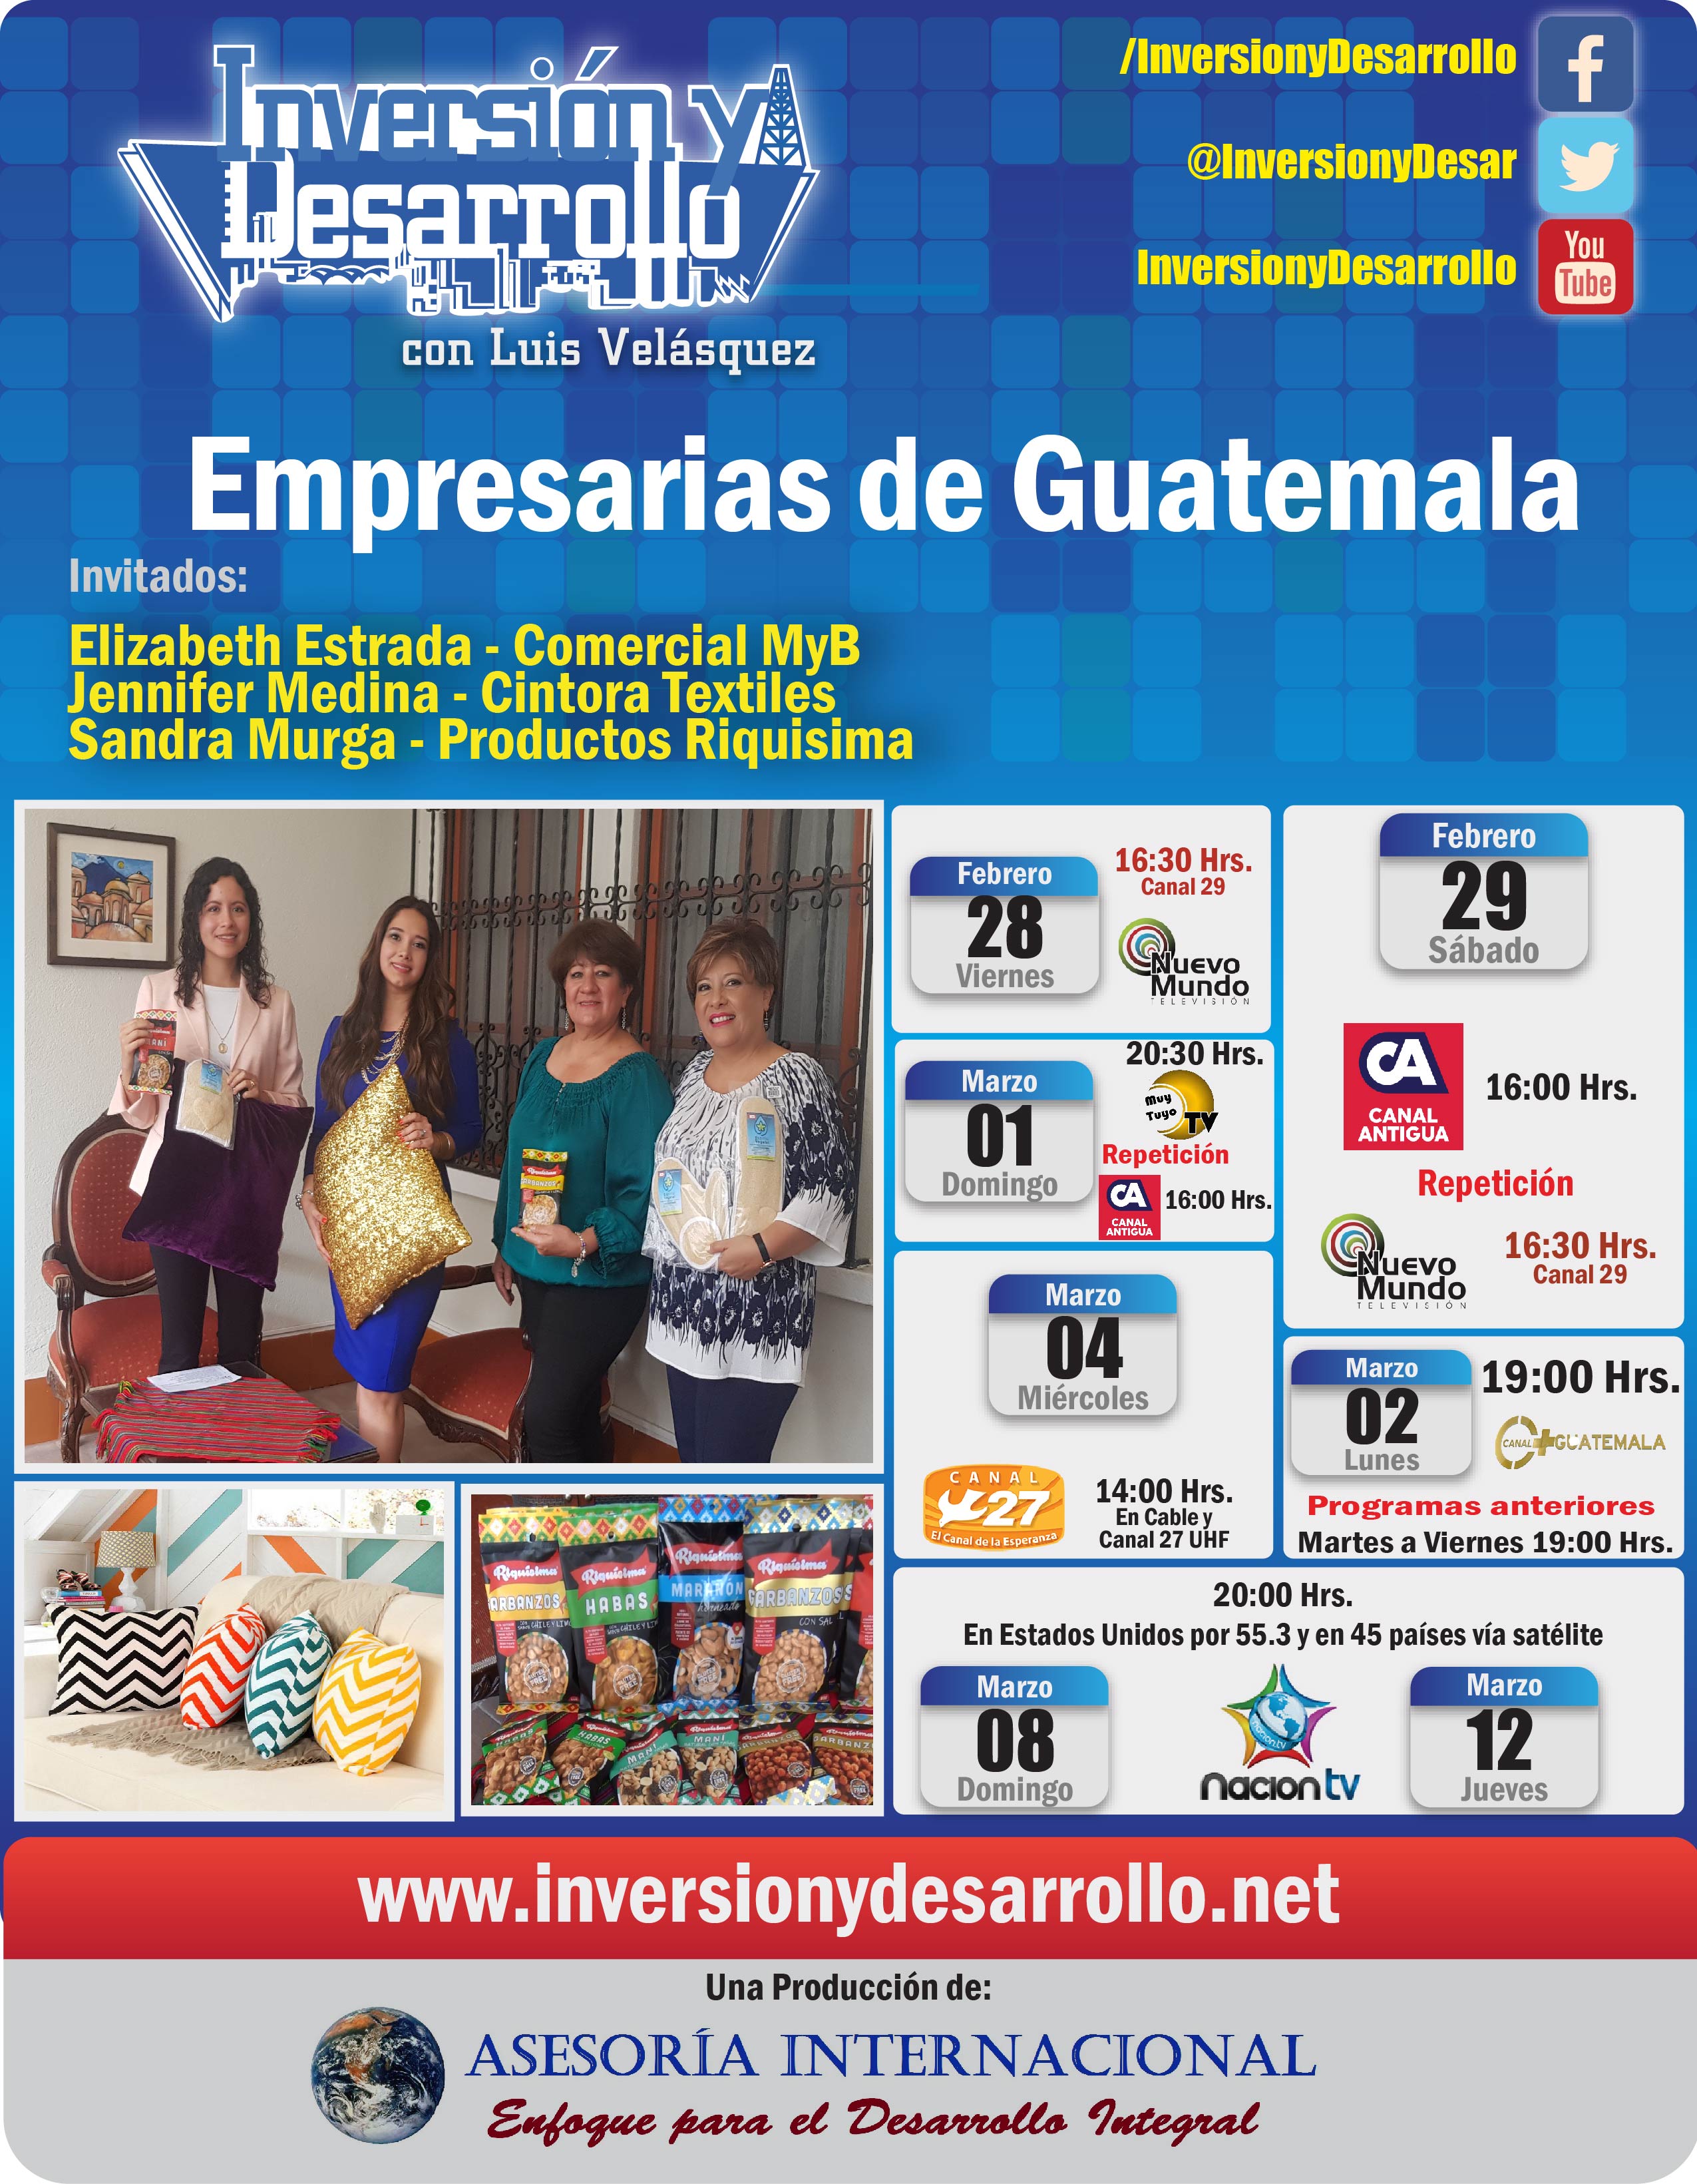 616. Empresarias de Guatemala